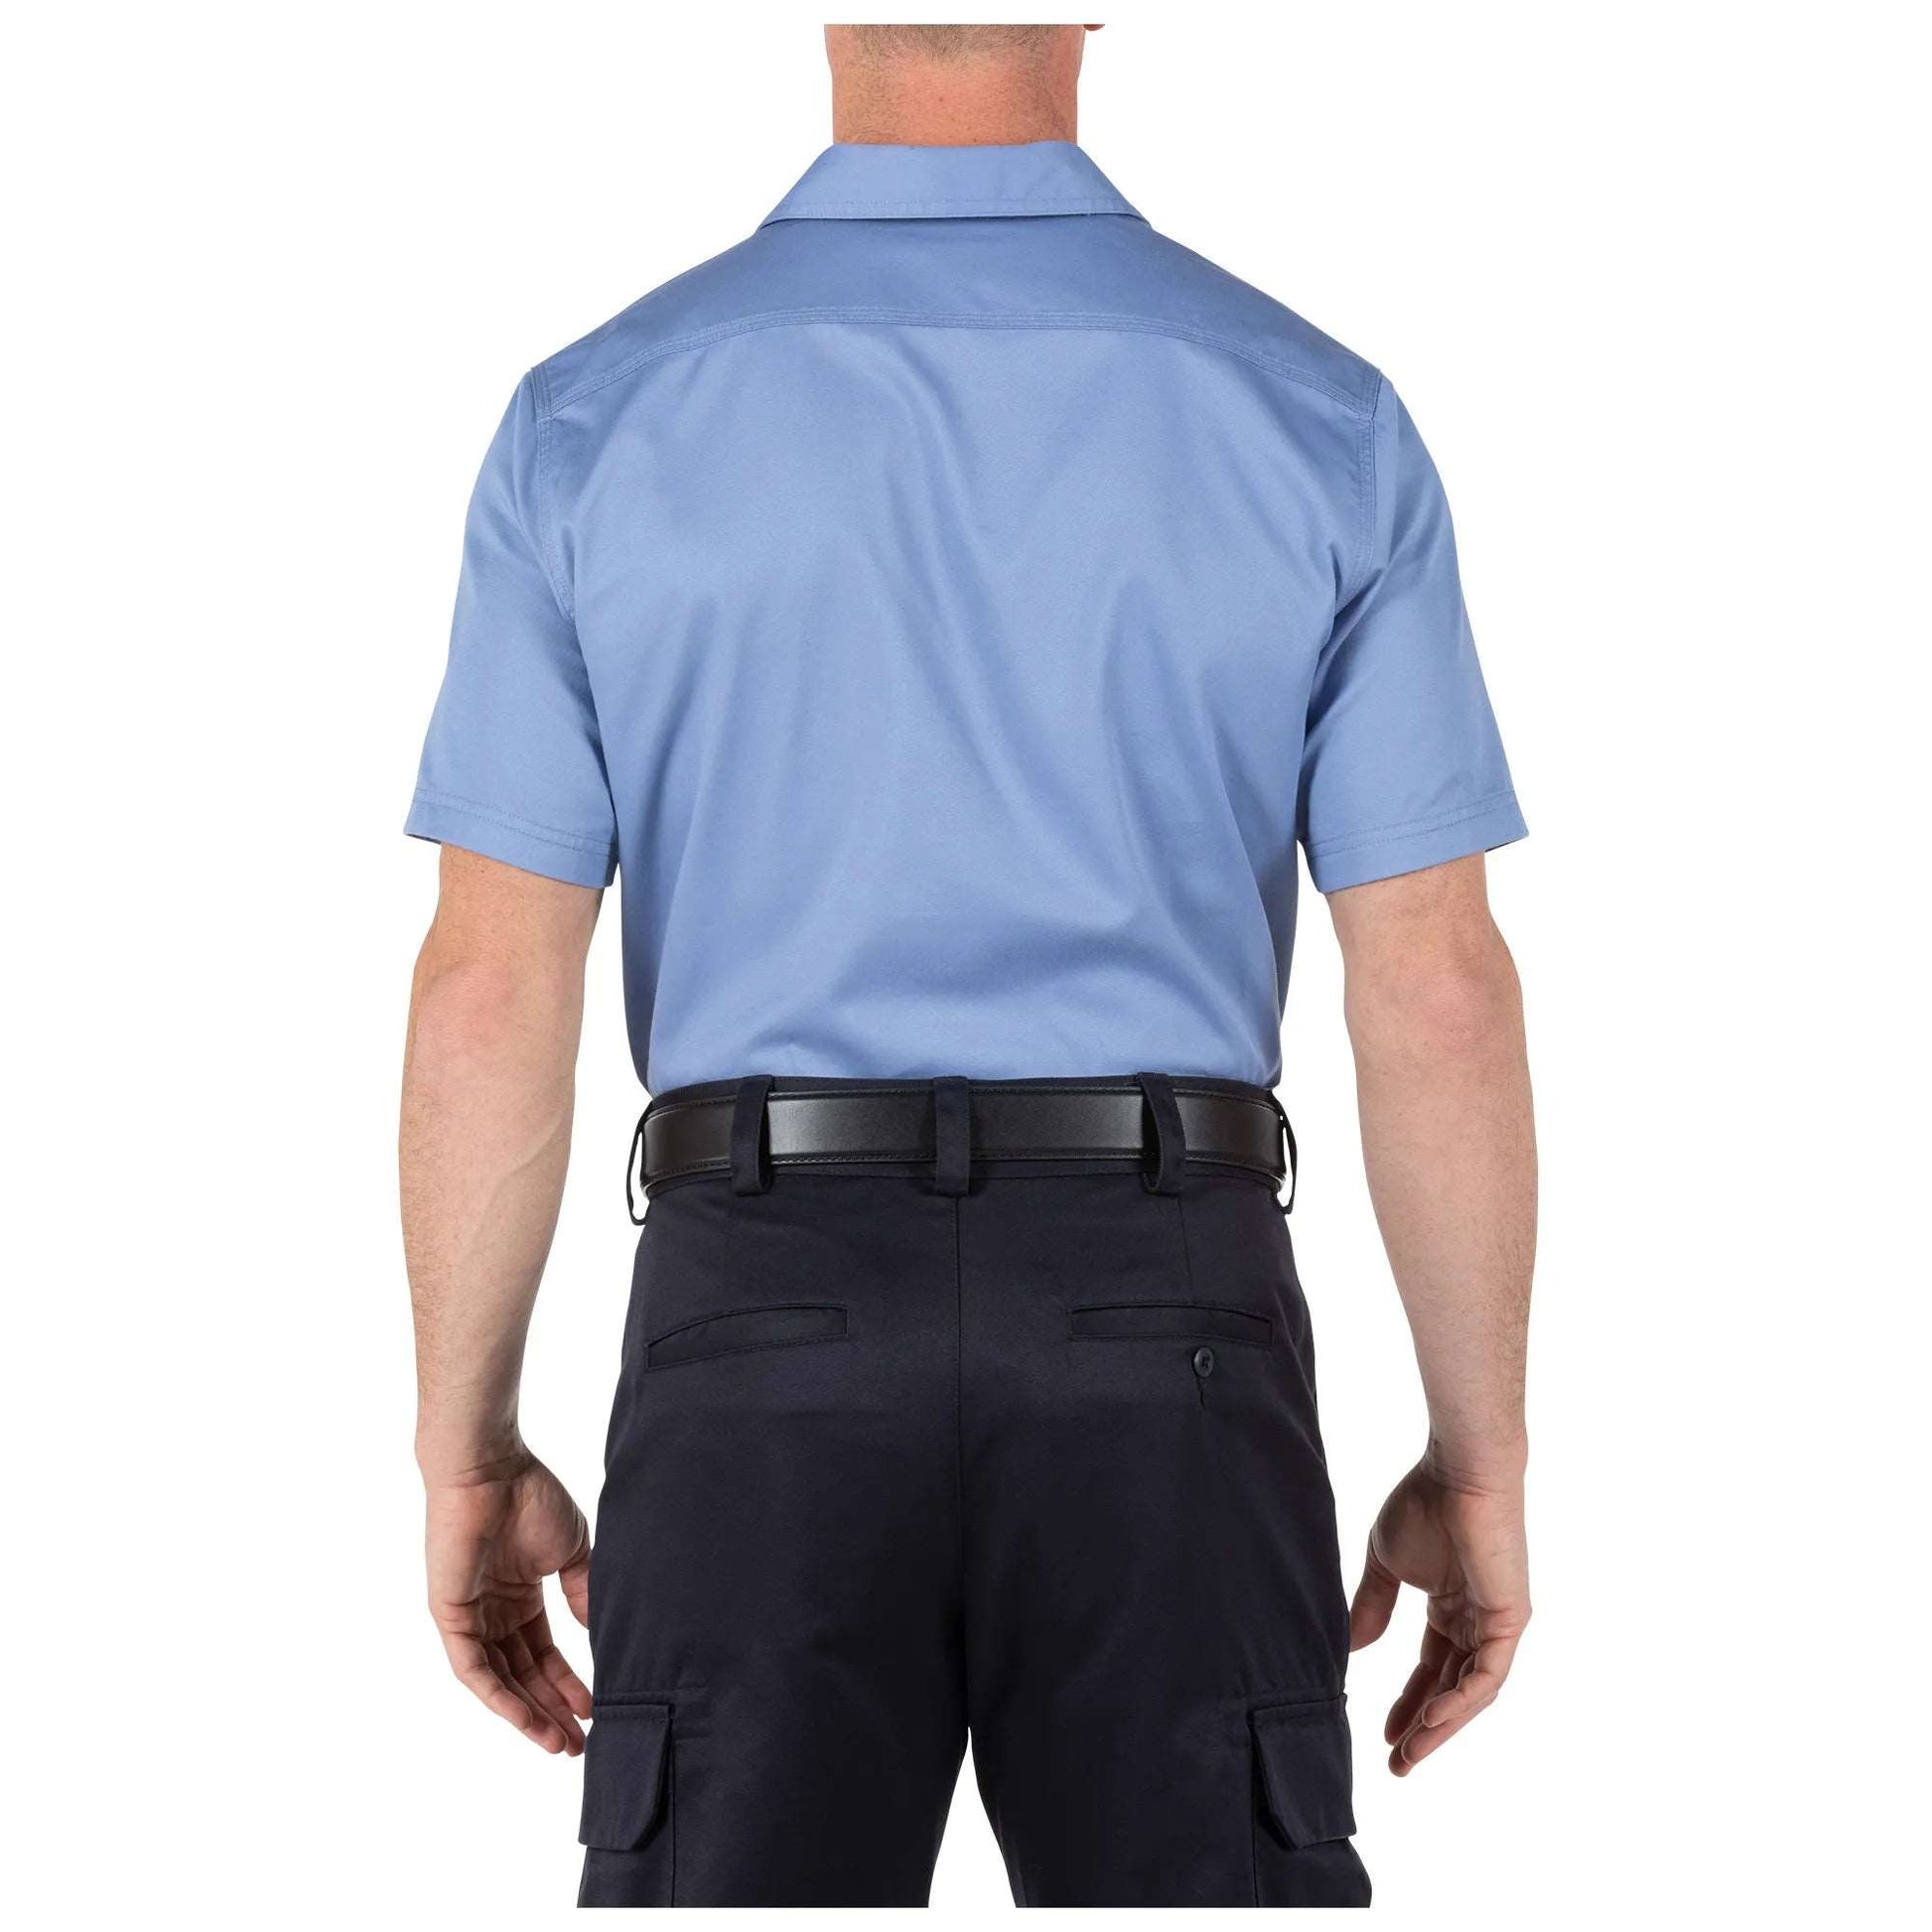 5.11 Tactical Company Short Sleeve Shirt-Tac Essentials